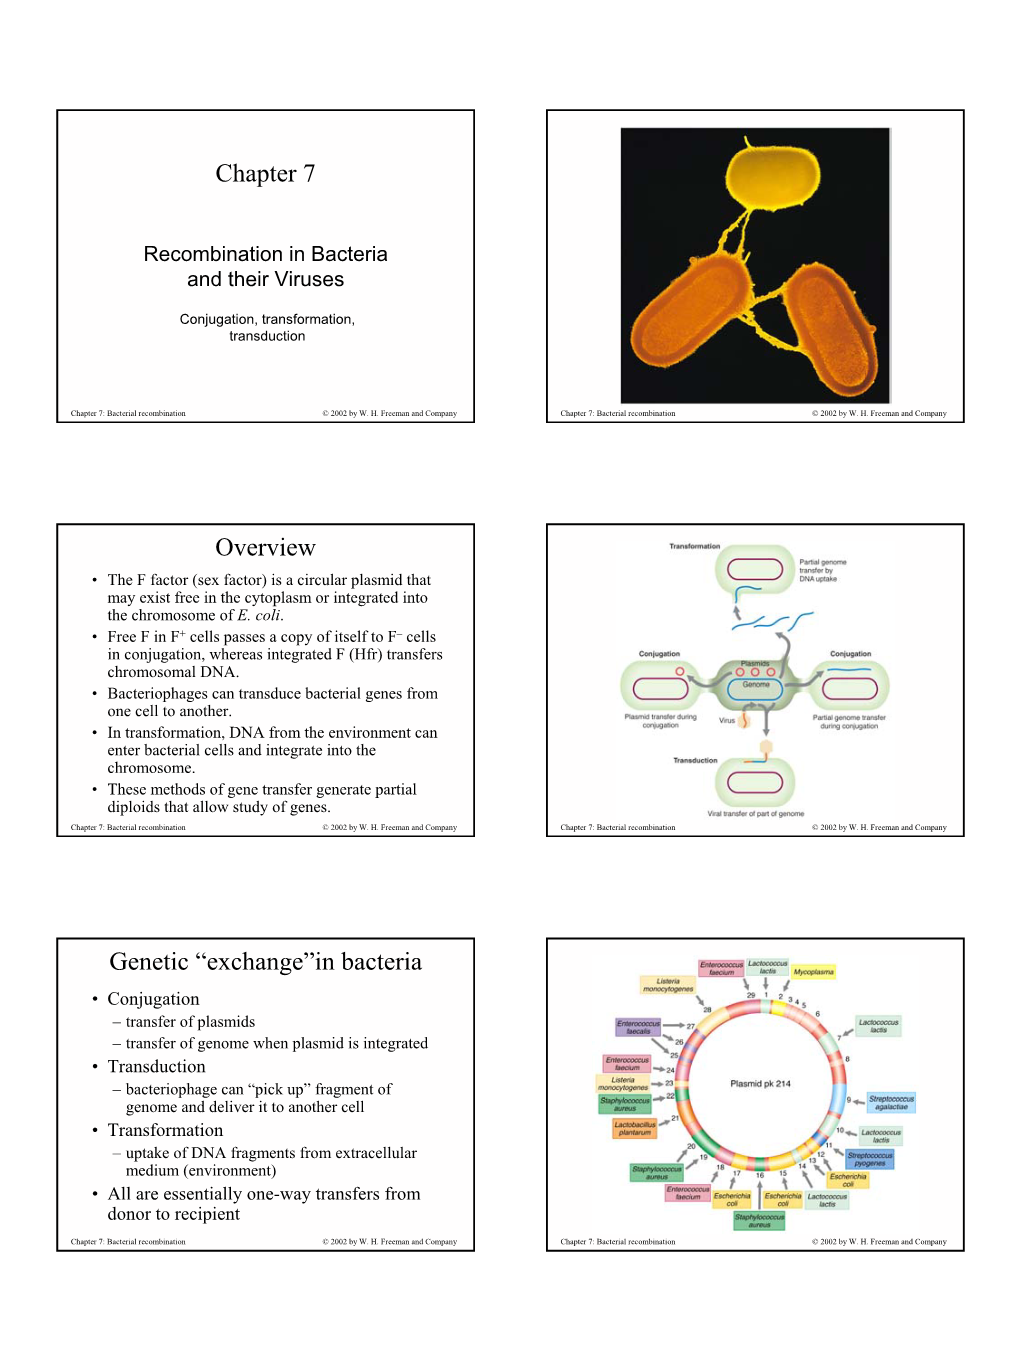 Chapter 7 Overview Genetic “Exchange”In Bacteria